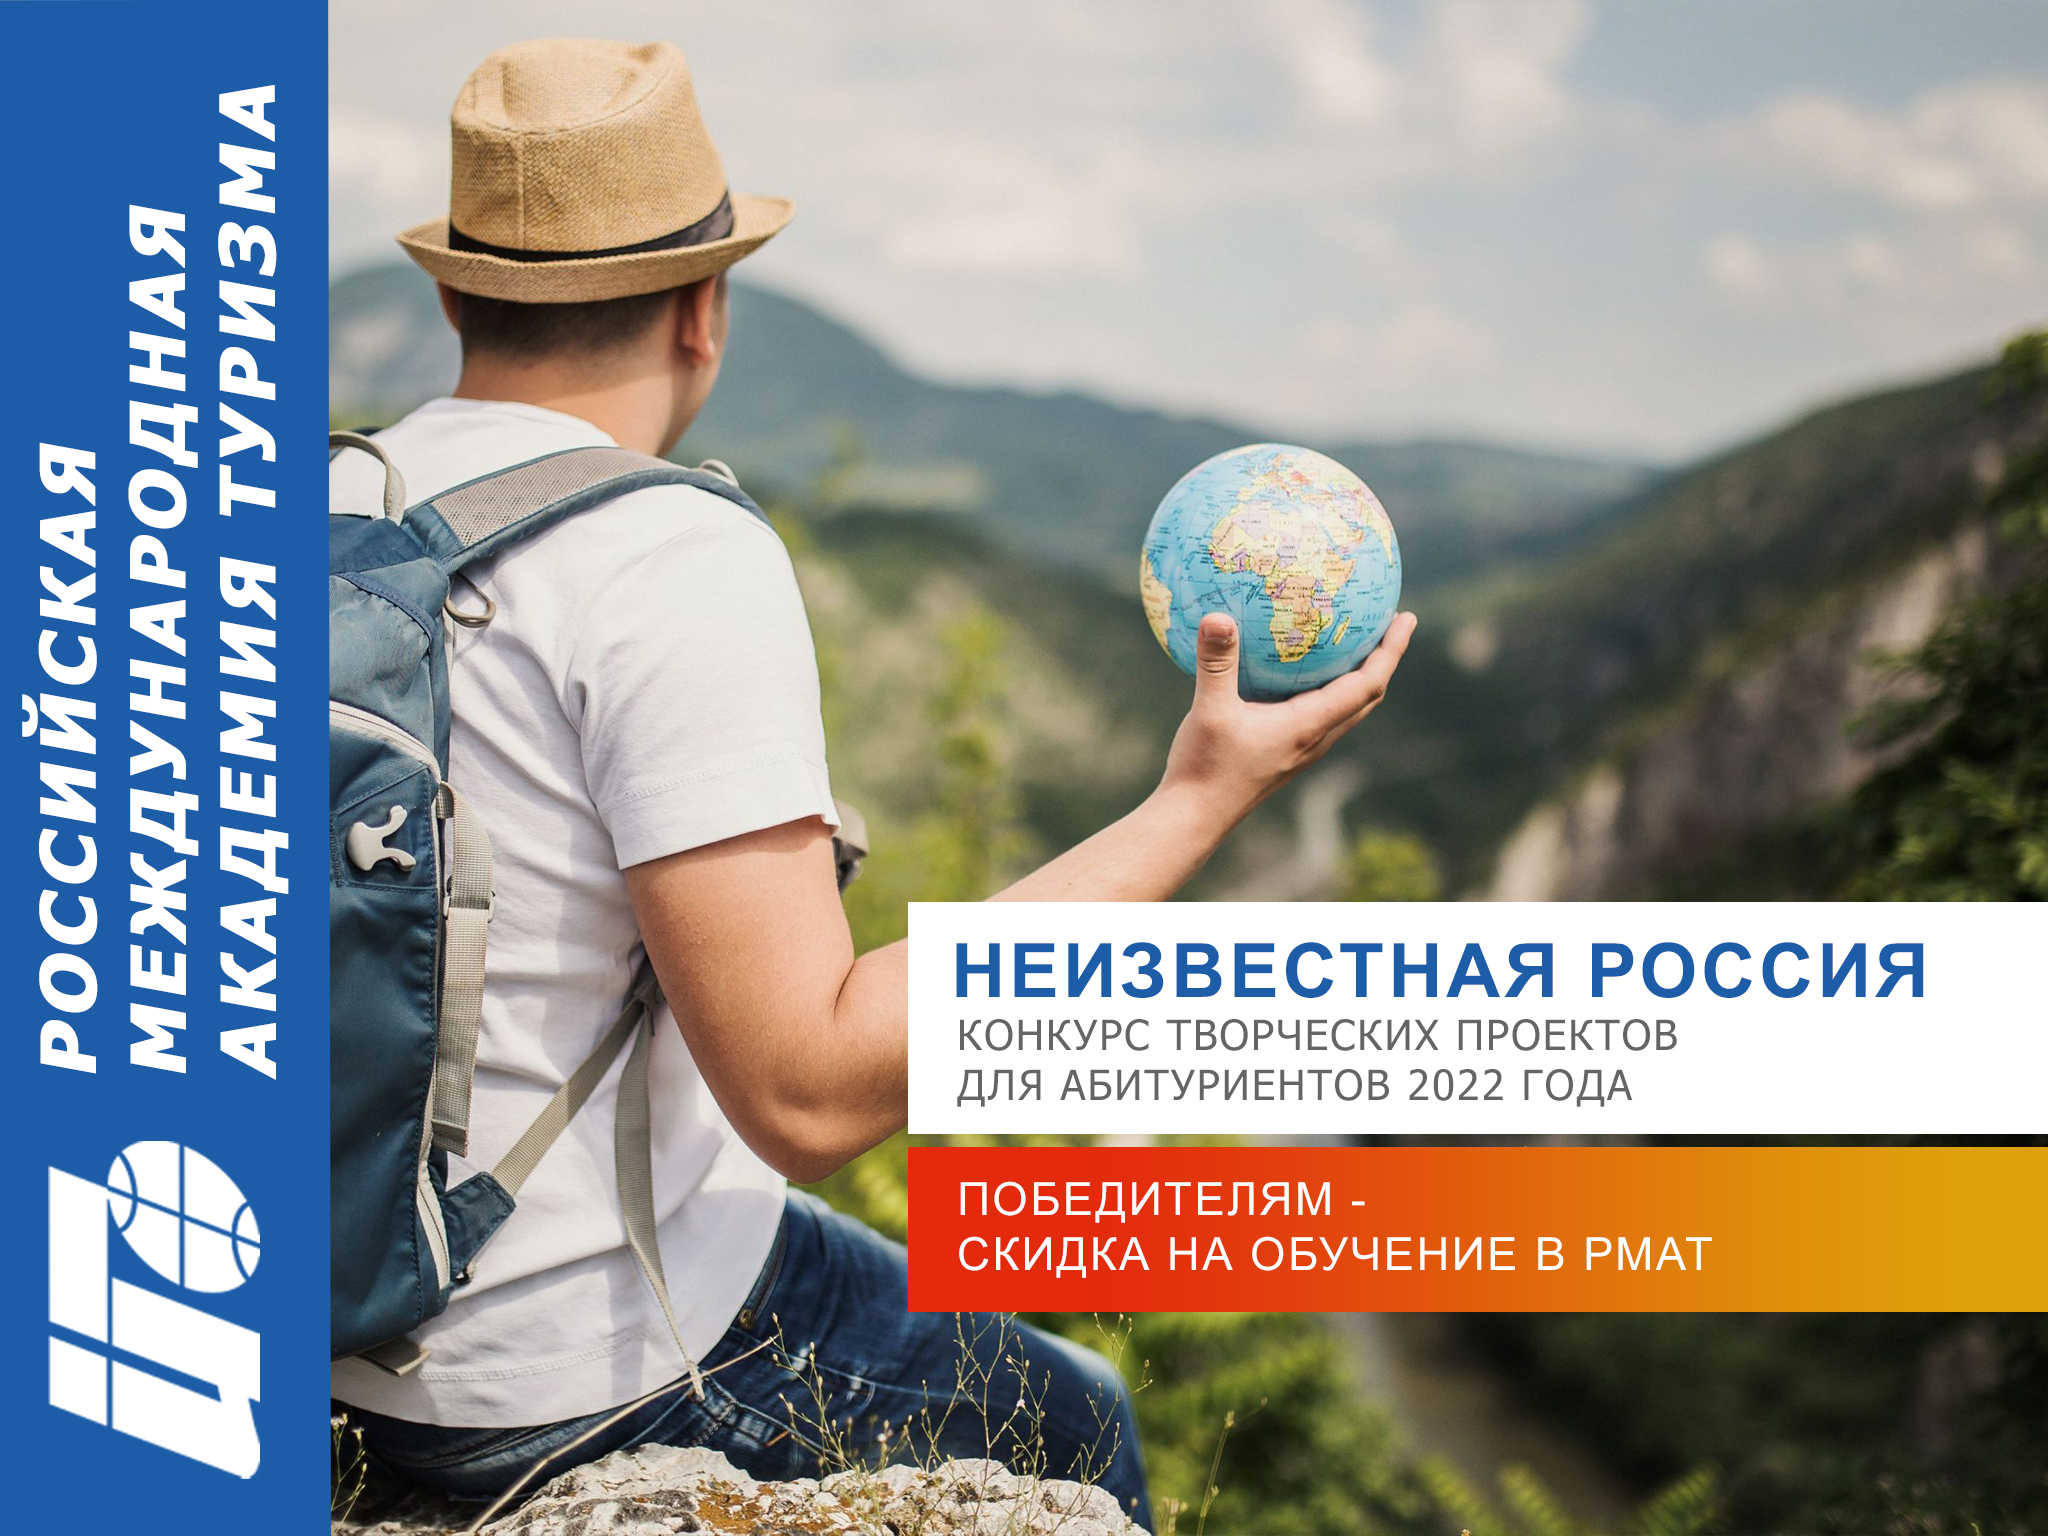 Олимпиада РМАТ для школьников 2022 - Конкурс творческих проектов по туризму и гостиничному делу - Поступи в РМАТ!